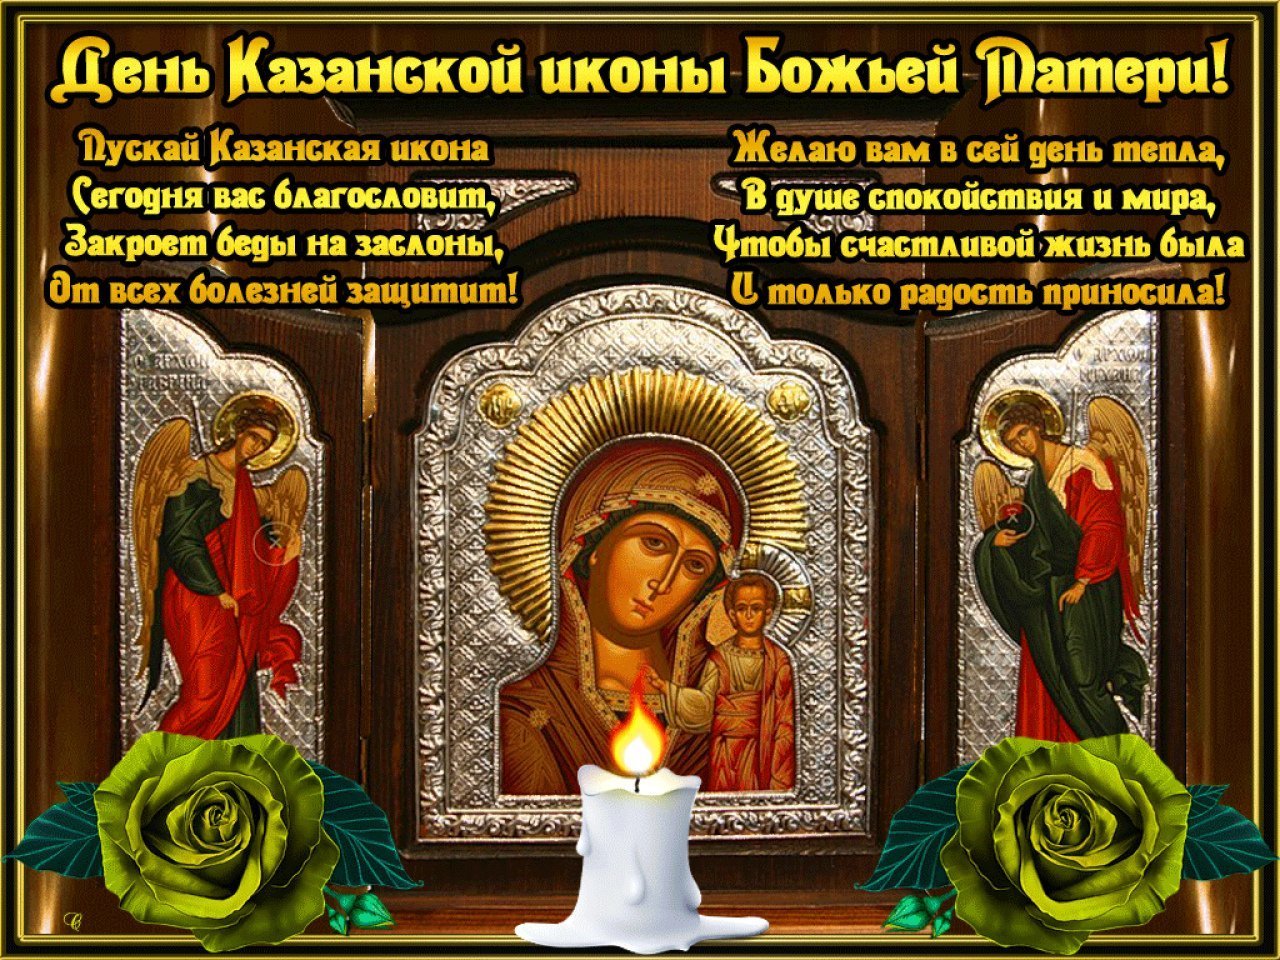 Особая дата: 21 июля Казанская икона Божьей Матери